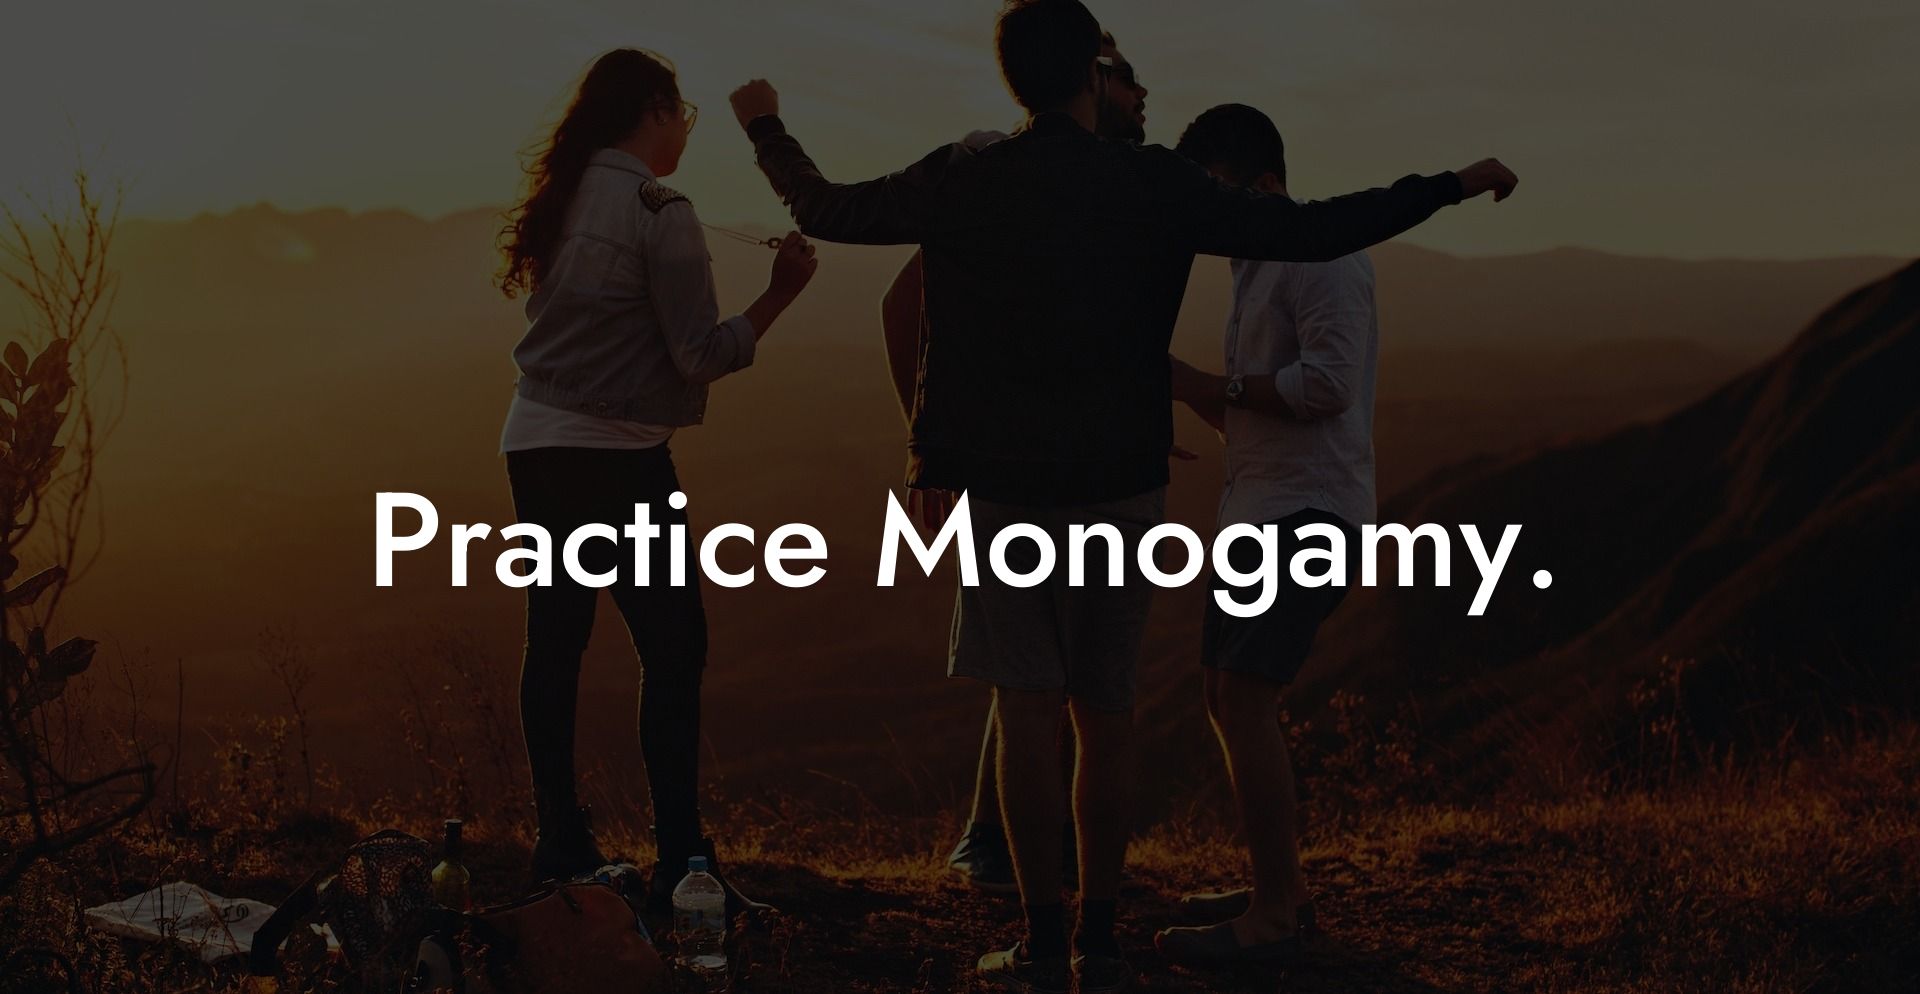 Practice Monogamy.